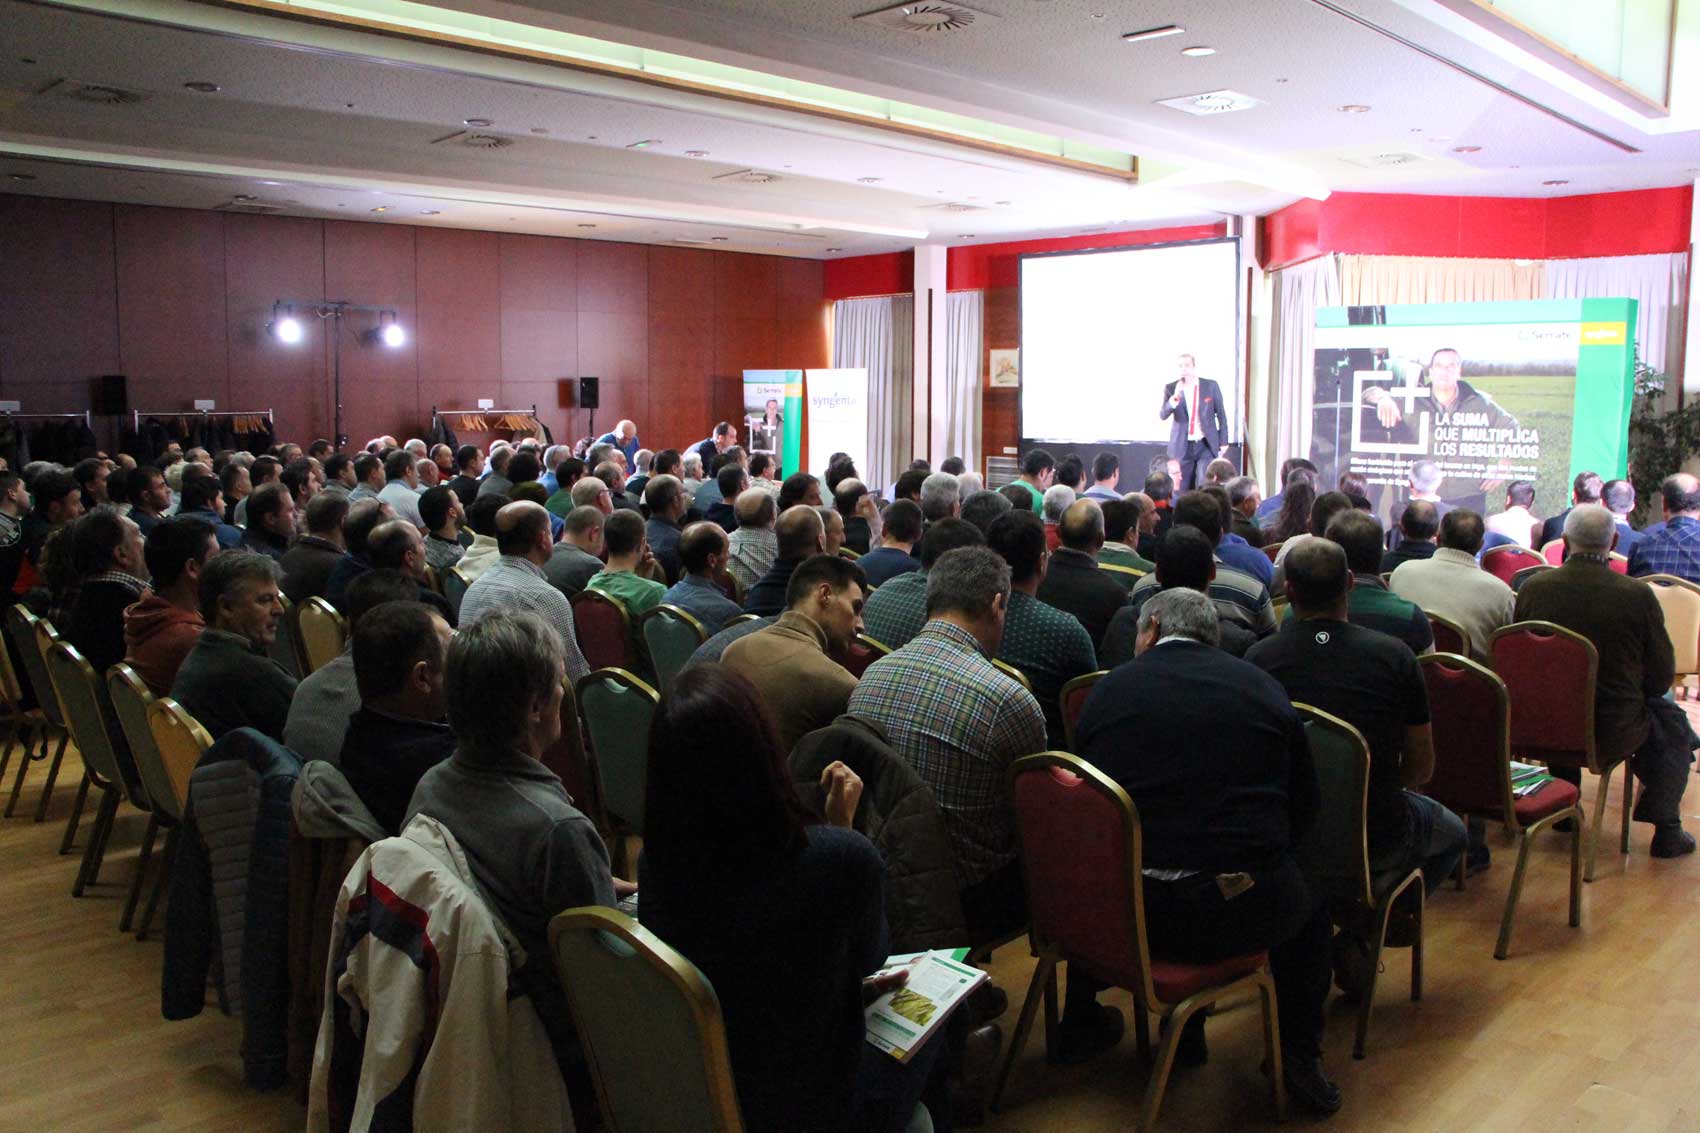 Ms de 200 agricultores y tcnicos acudieron a la Jornada de Serrate en Burgos